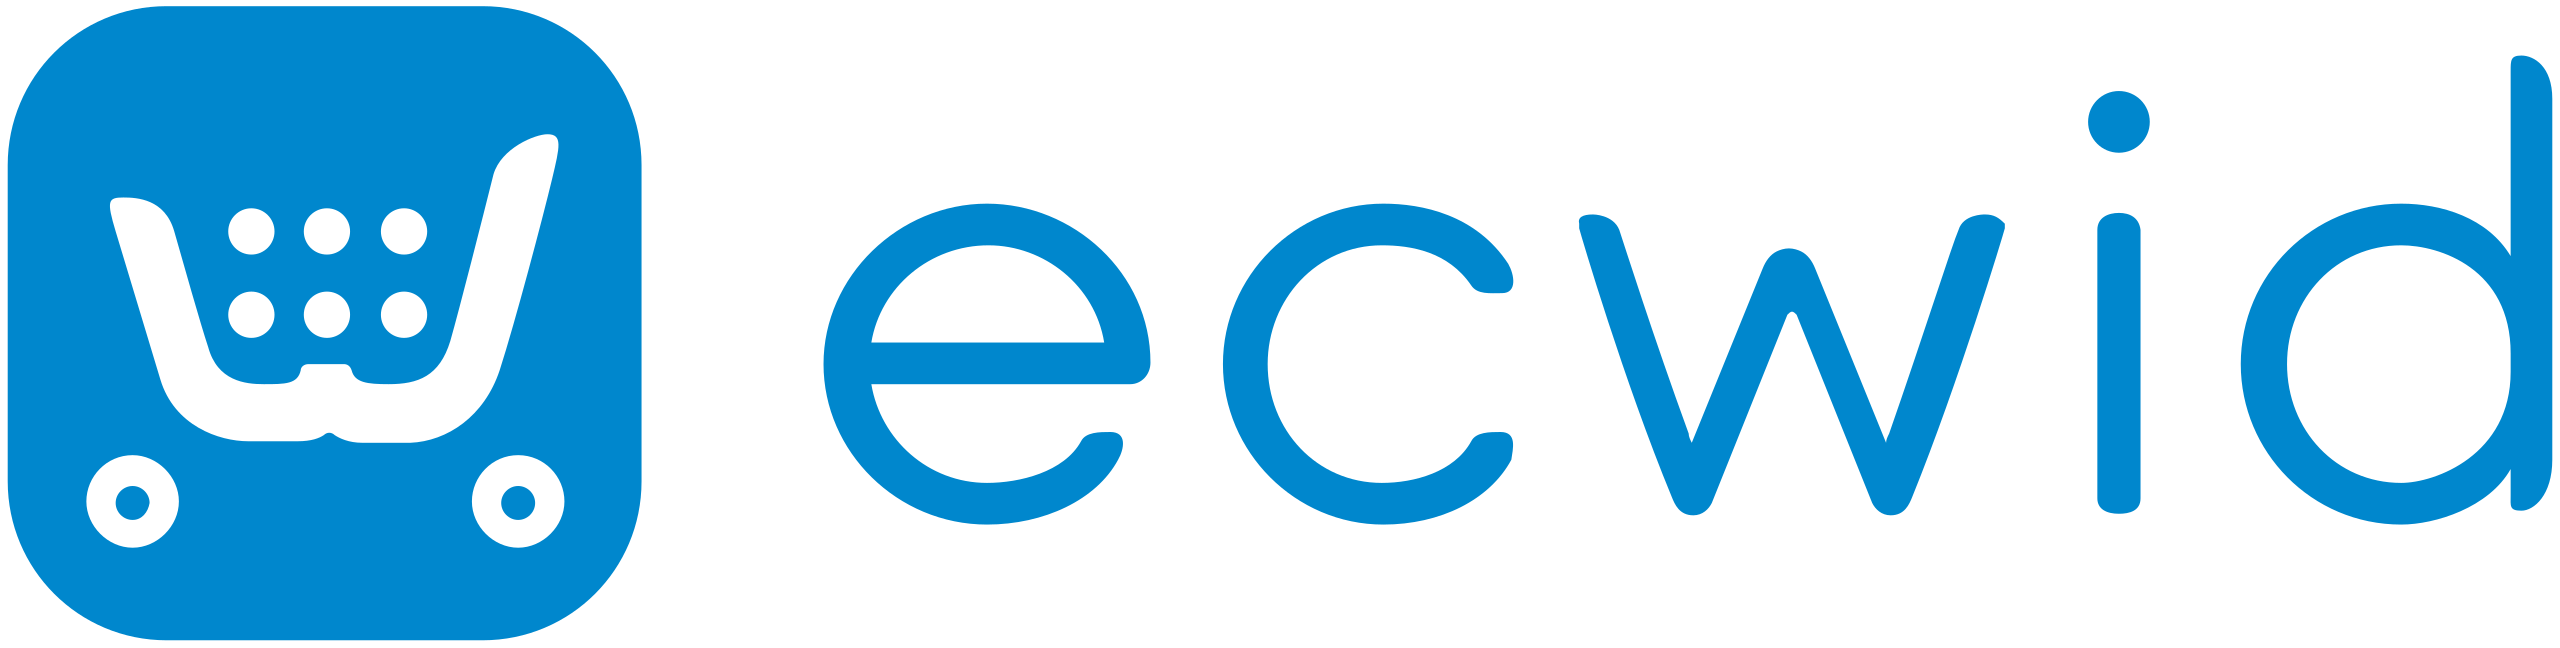 ECWID logo.